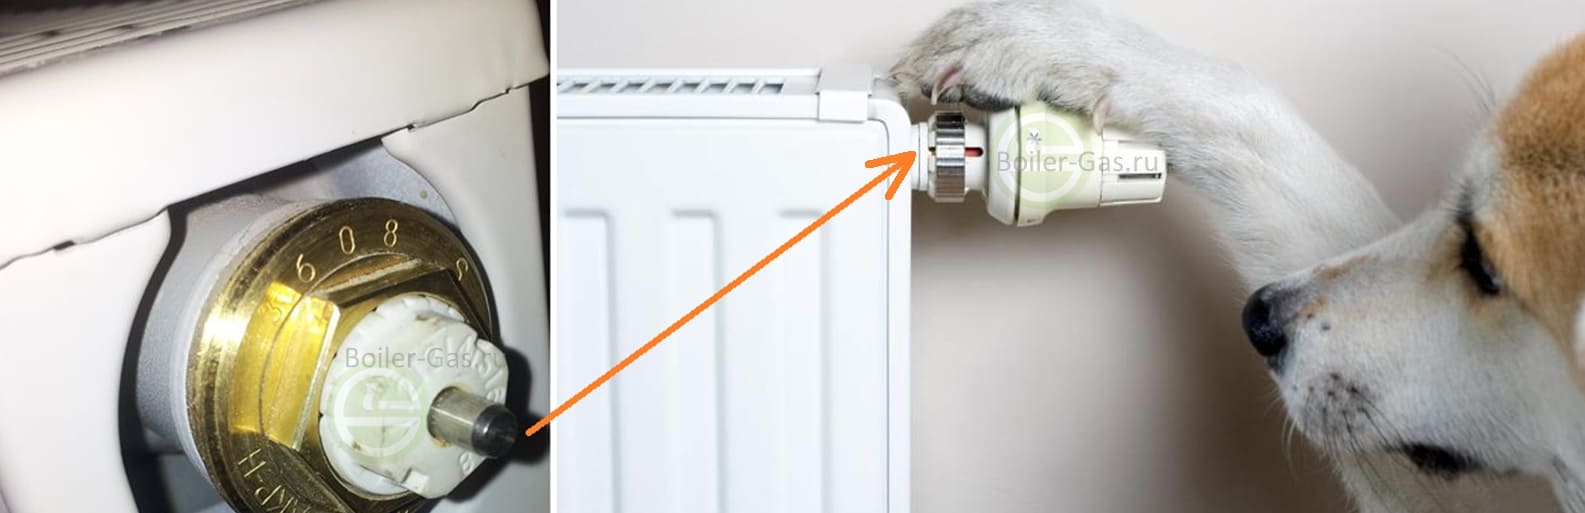 термоголовка, терморегулятор, термостат для радиатора отопления